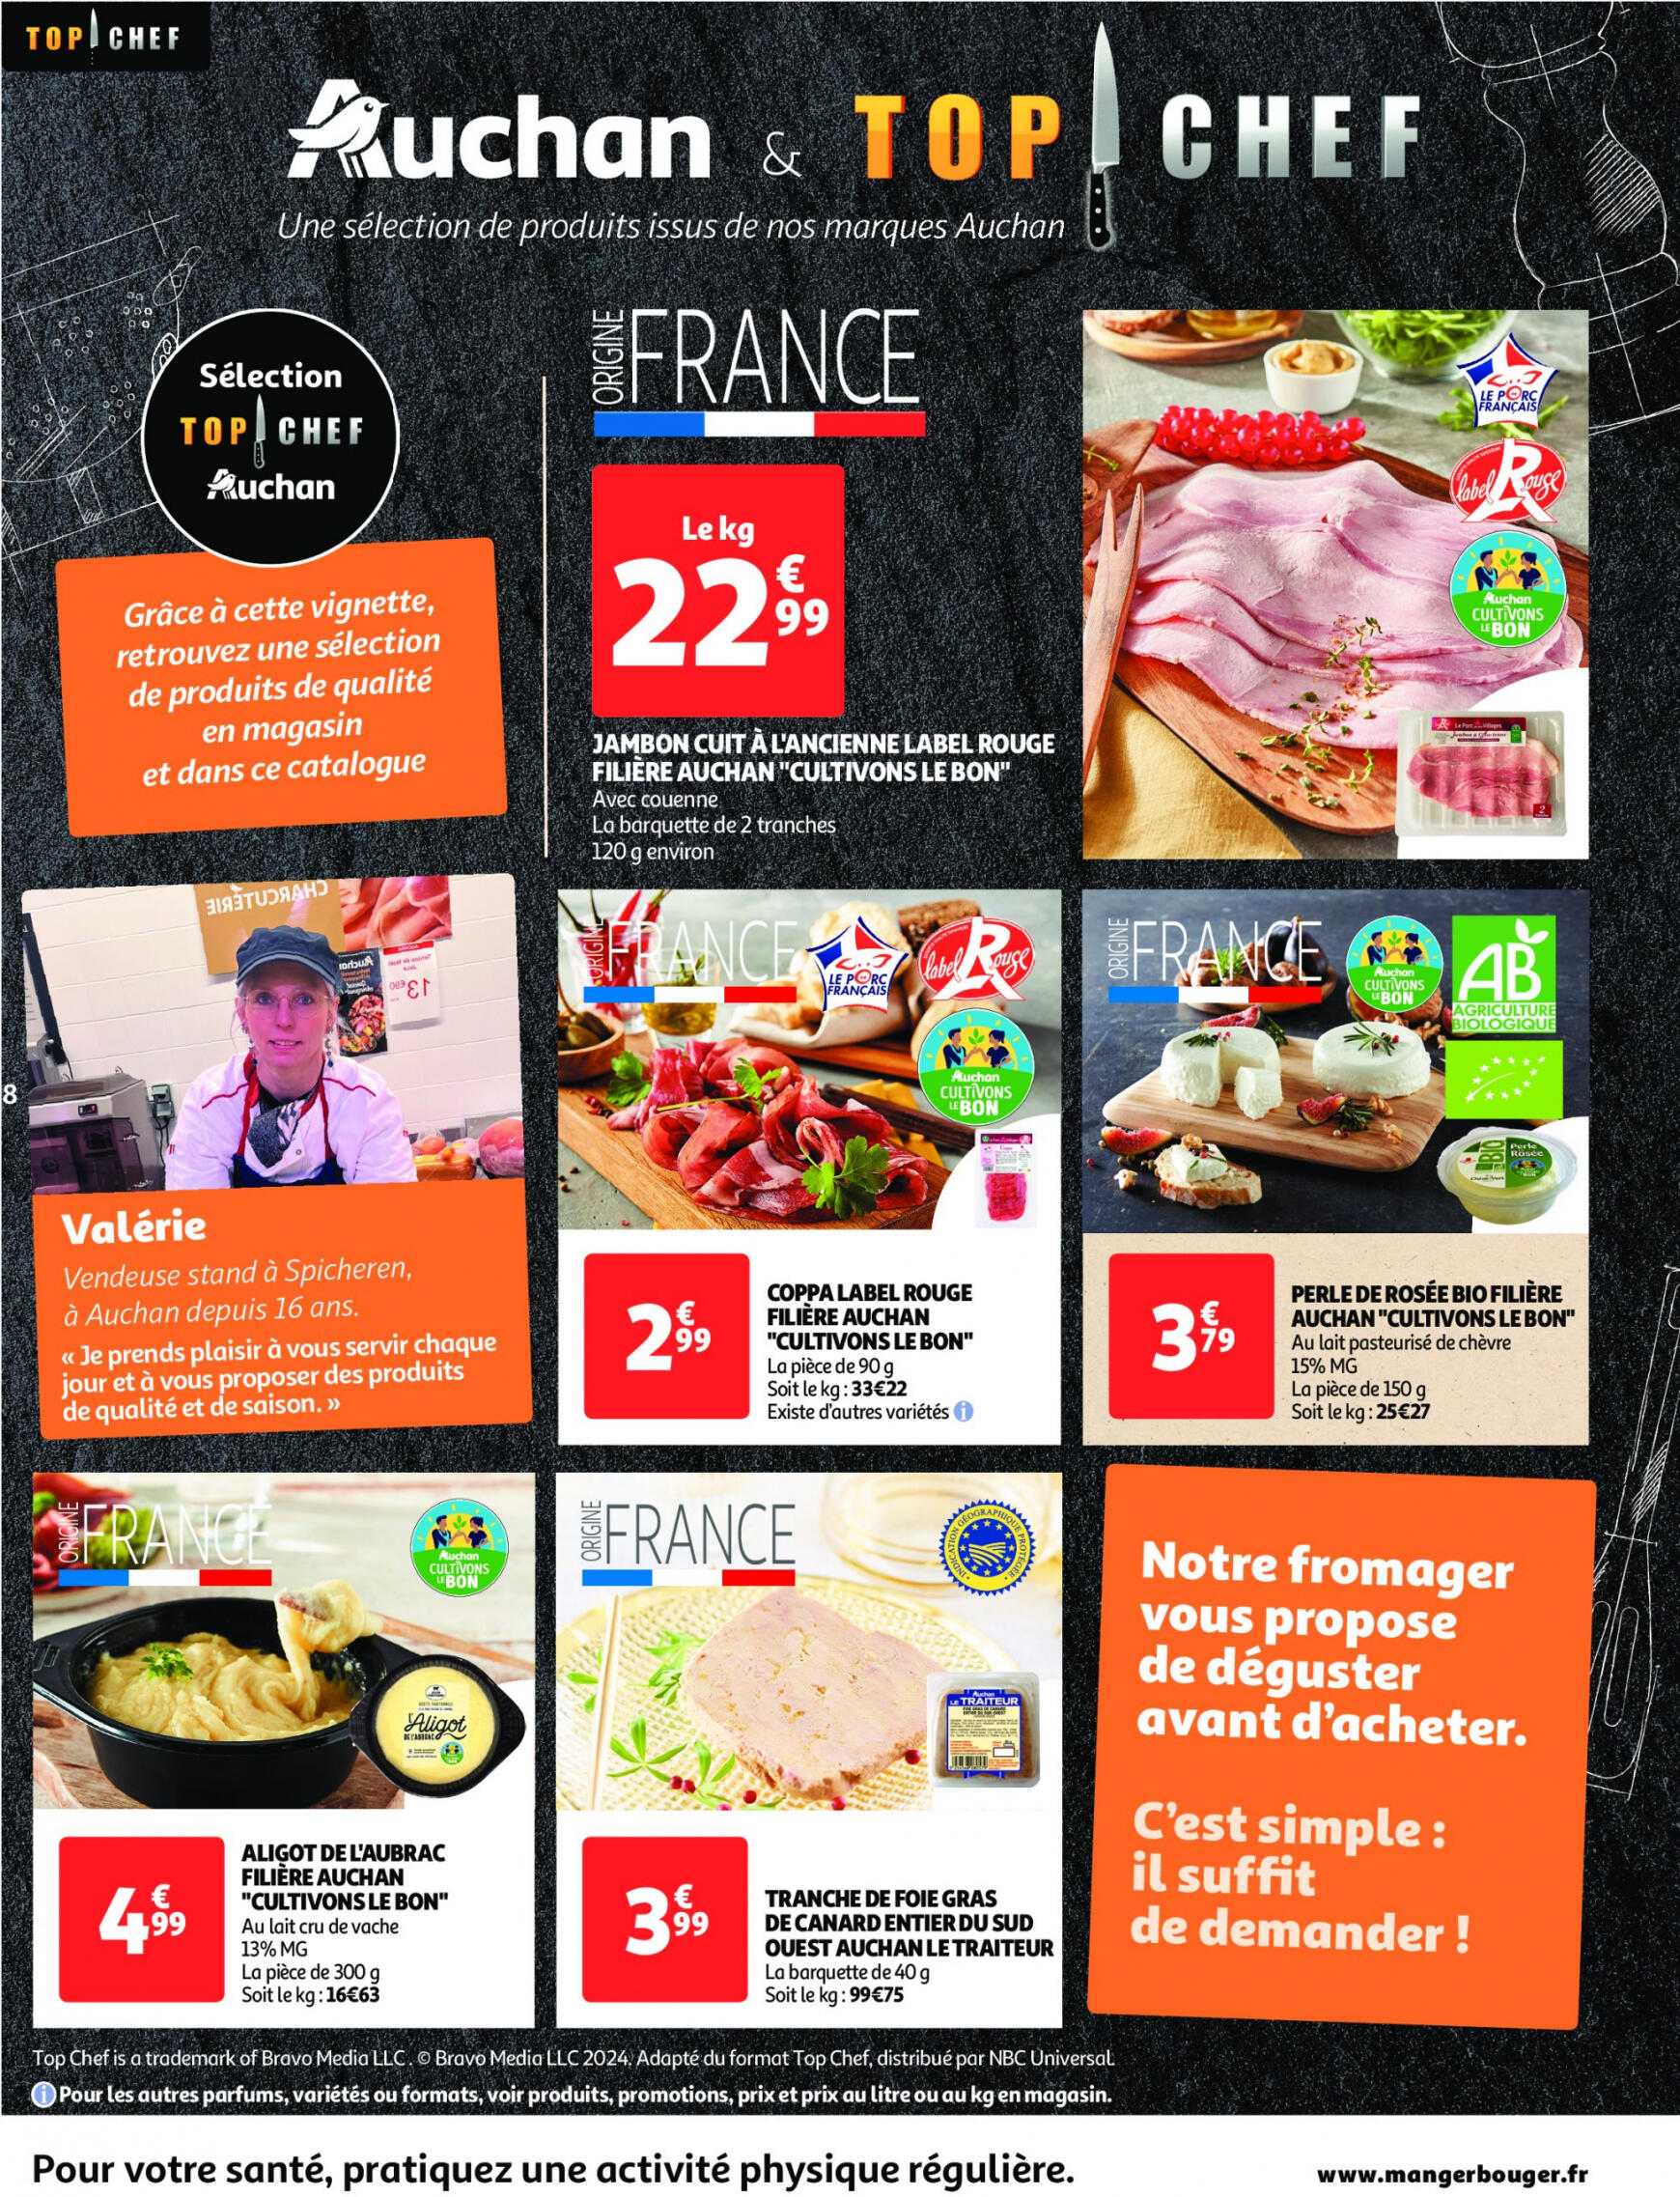 auchan - Auchan supermarché - Faites le plein de bonnes affaires folder huidig 22.05. - 26.05. - page: 8